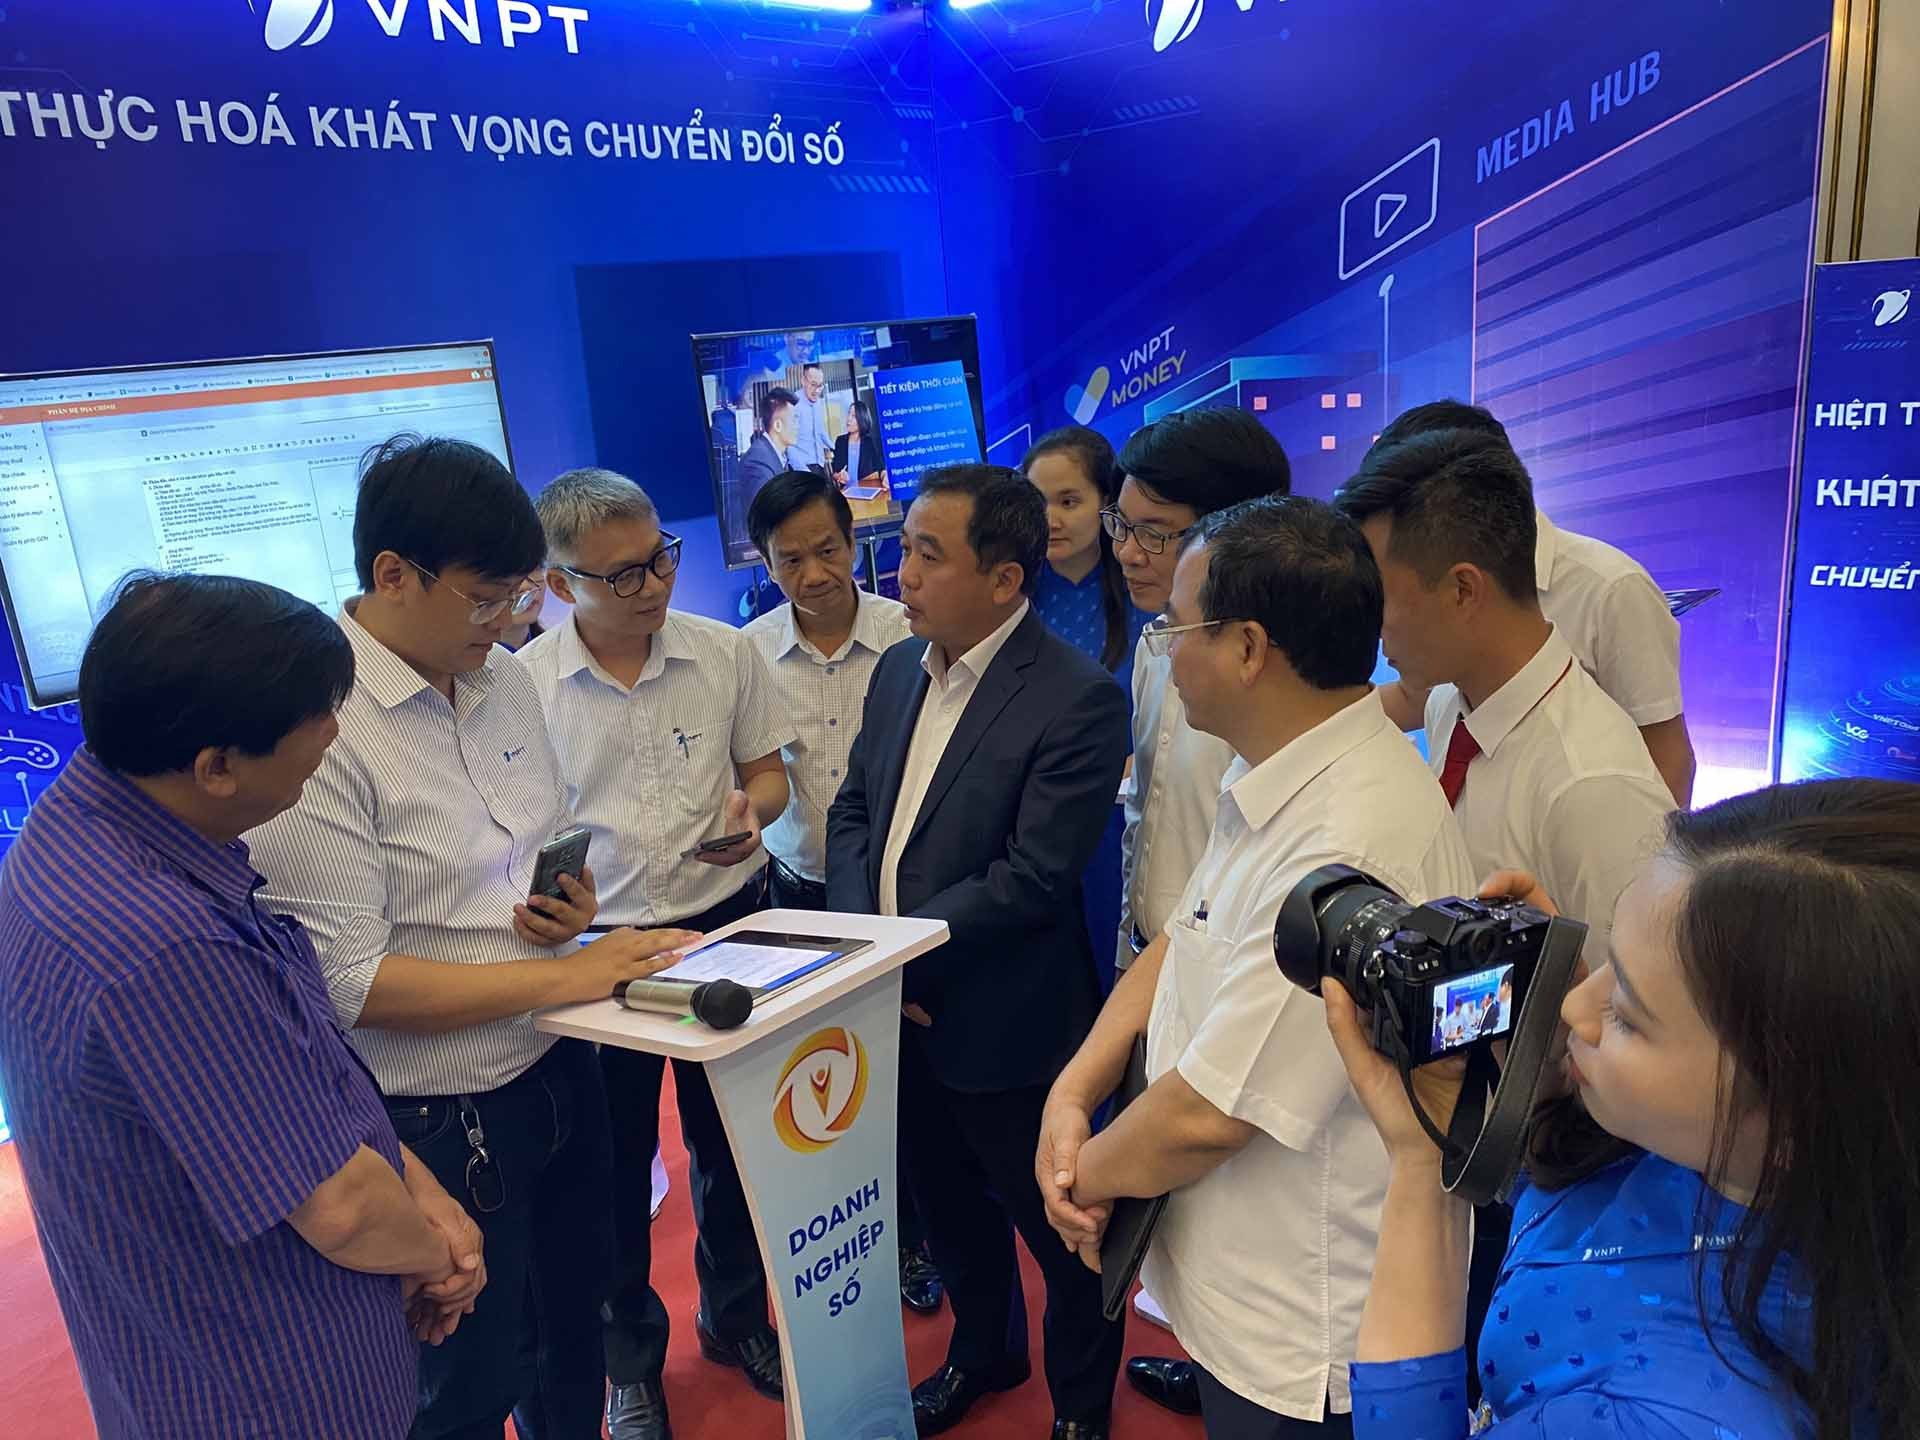 Bí thư Tỉnh ủy Trần Đức Thắng kêu gọi các doanh nghiệp như Tập đoàn Bưu chính, Viễn thông VNPT tham gia đóng góp vào công cuộc thúc đẩy chuyển đổi số của tỉnh Hải Dương.